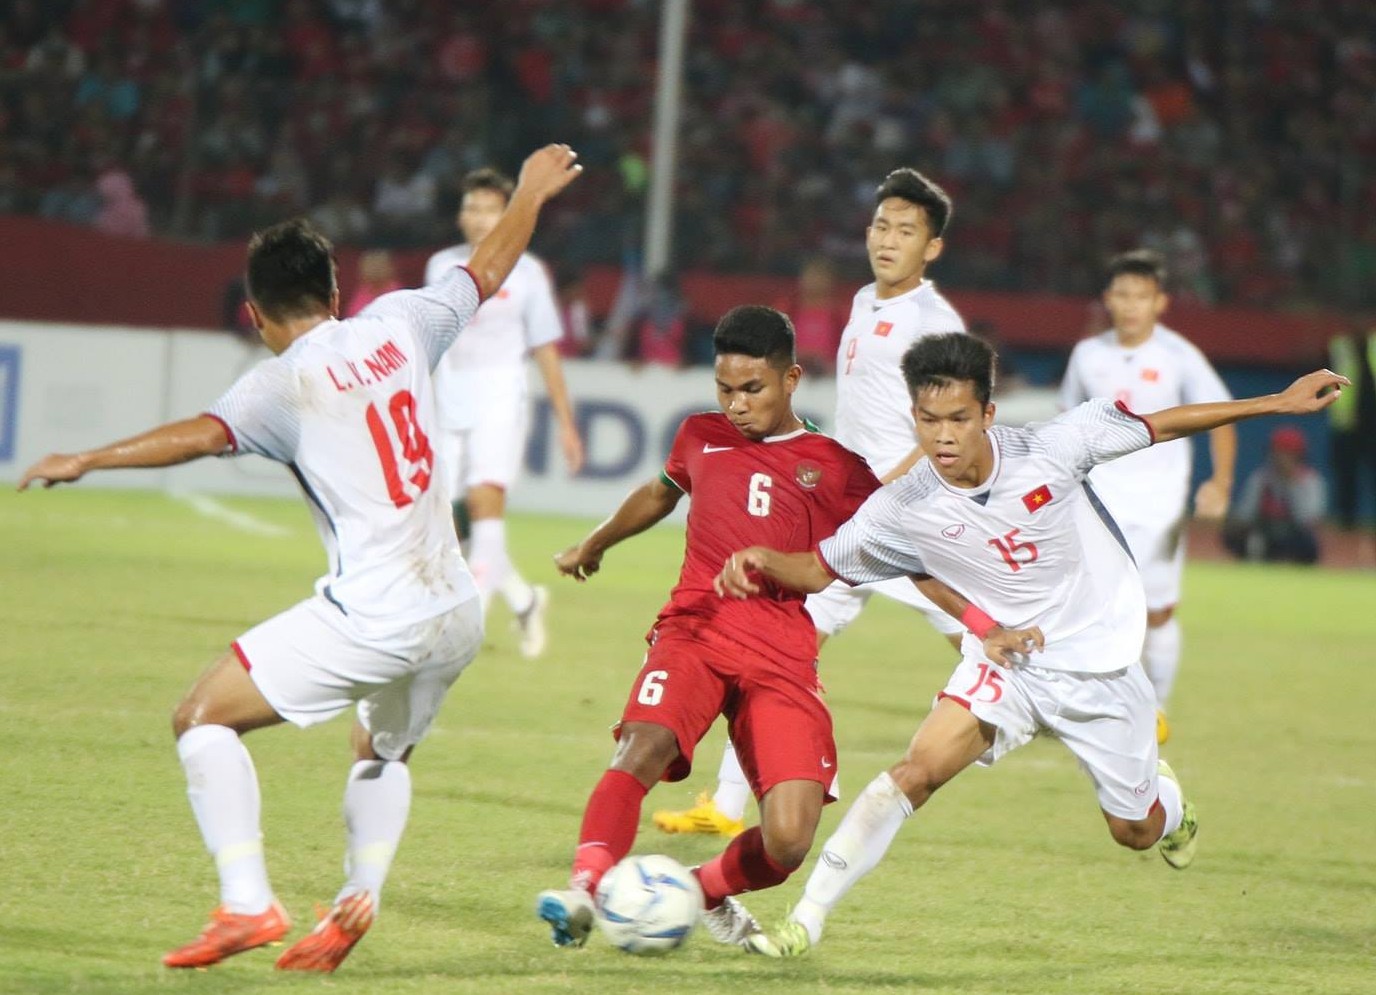 Thua đau U19 Indonesia, U19 Việt Nam đối diện nguy cơ bị loại sớm  - Ảnh 2.